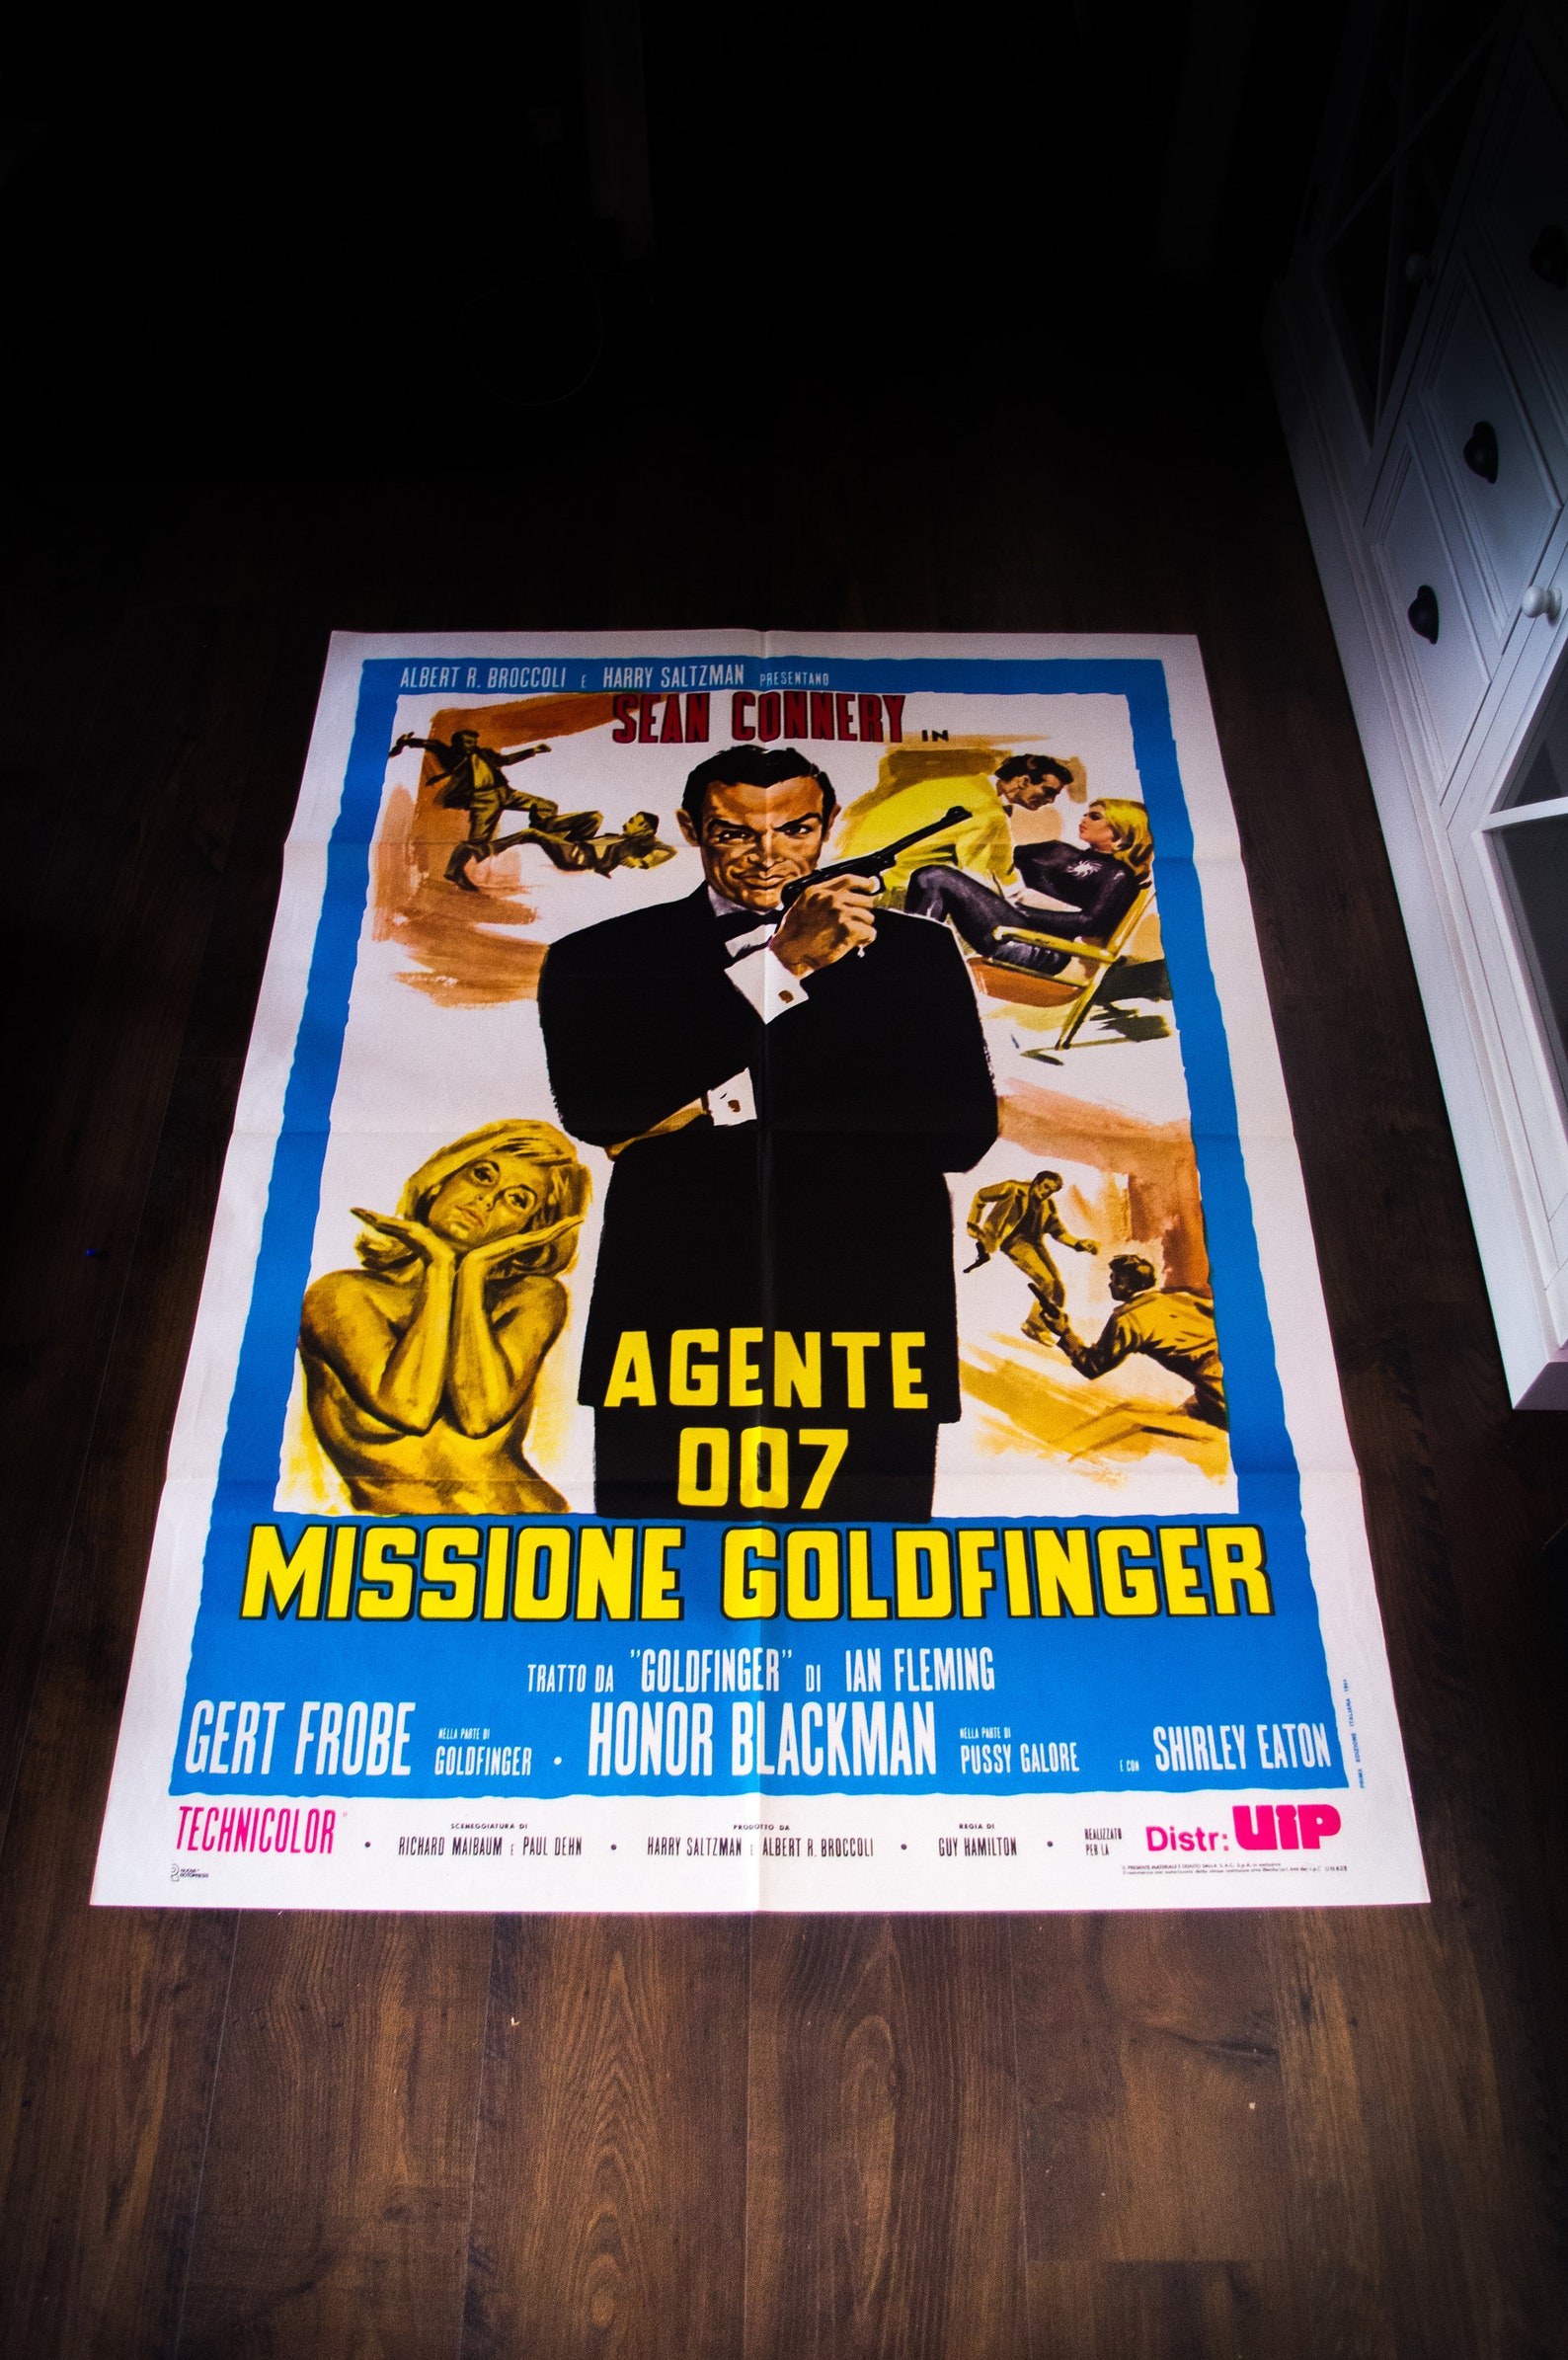 JAMES BOND 007 GOLDFINGER Rerelease Poster 1970's 39 | Etsy